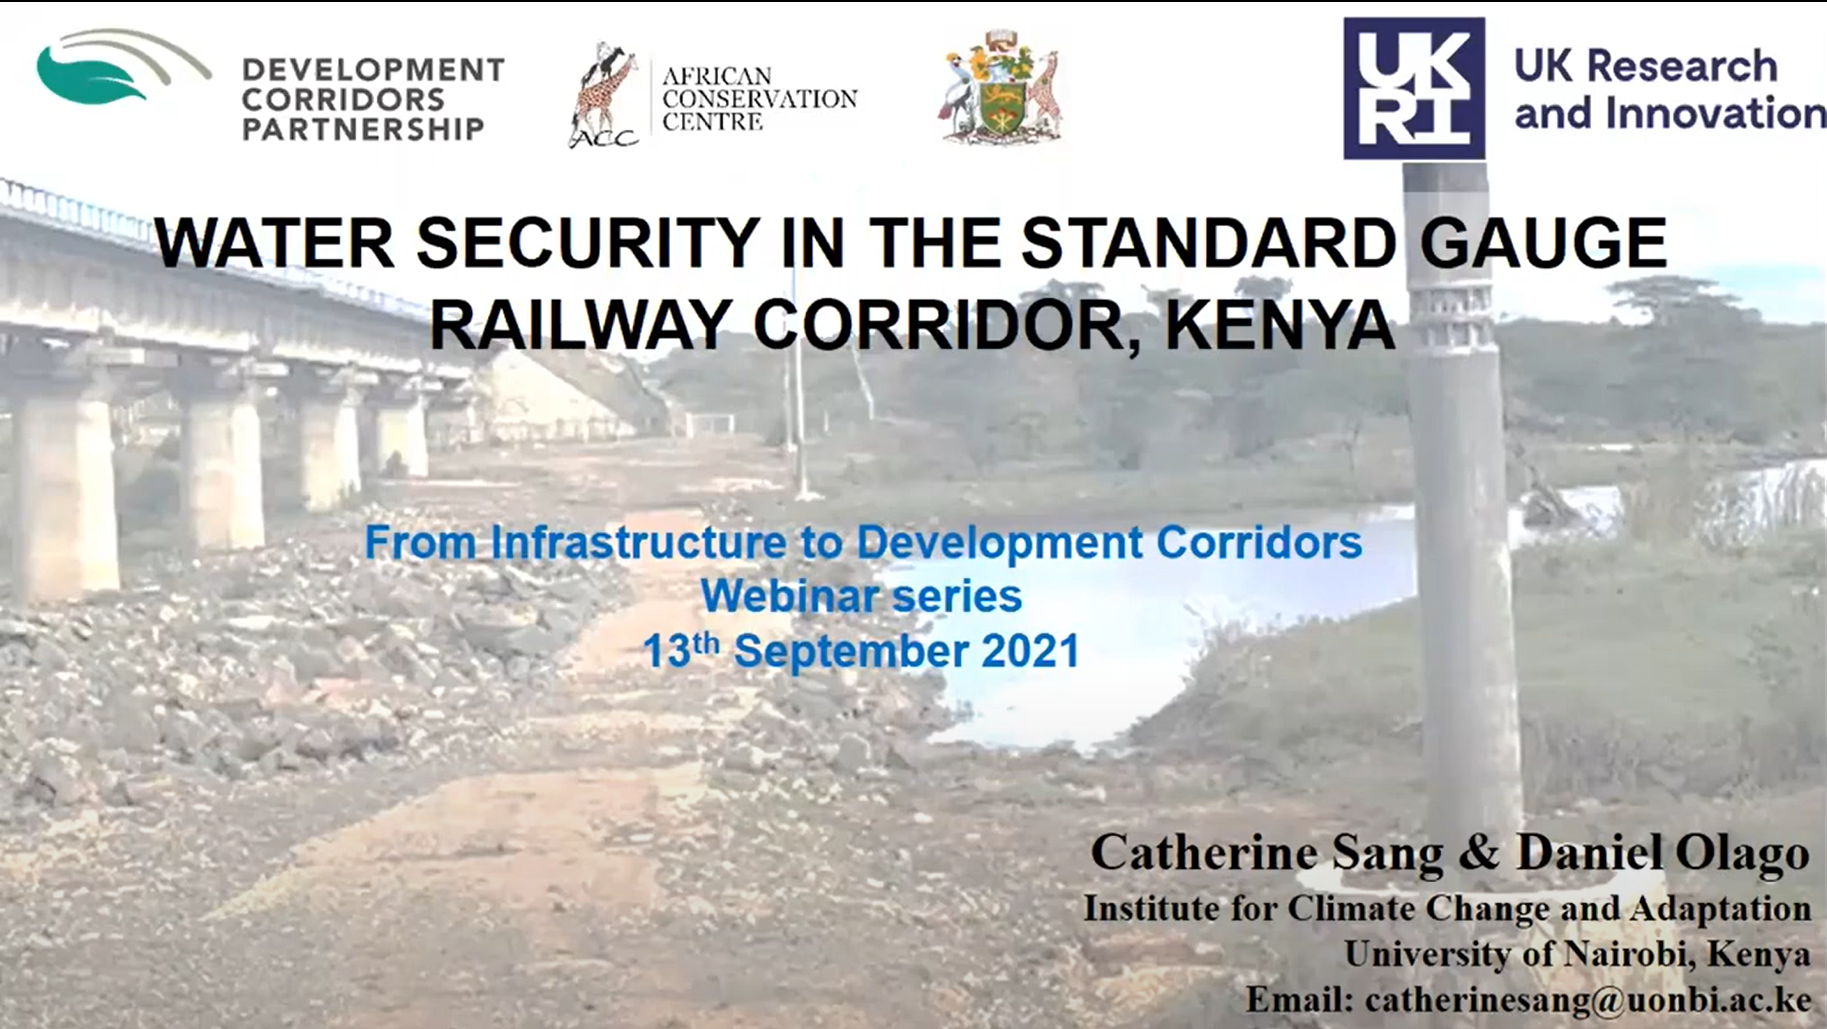 Water security in the Standard Gauge Railway corridor in Kenya